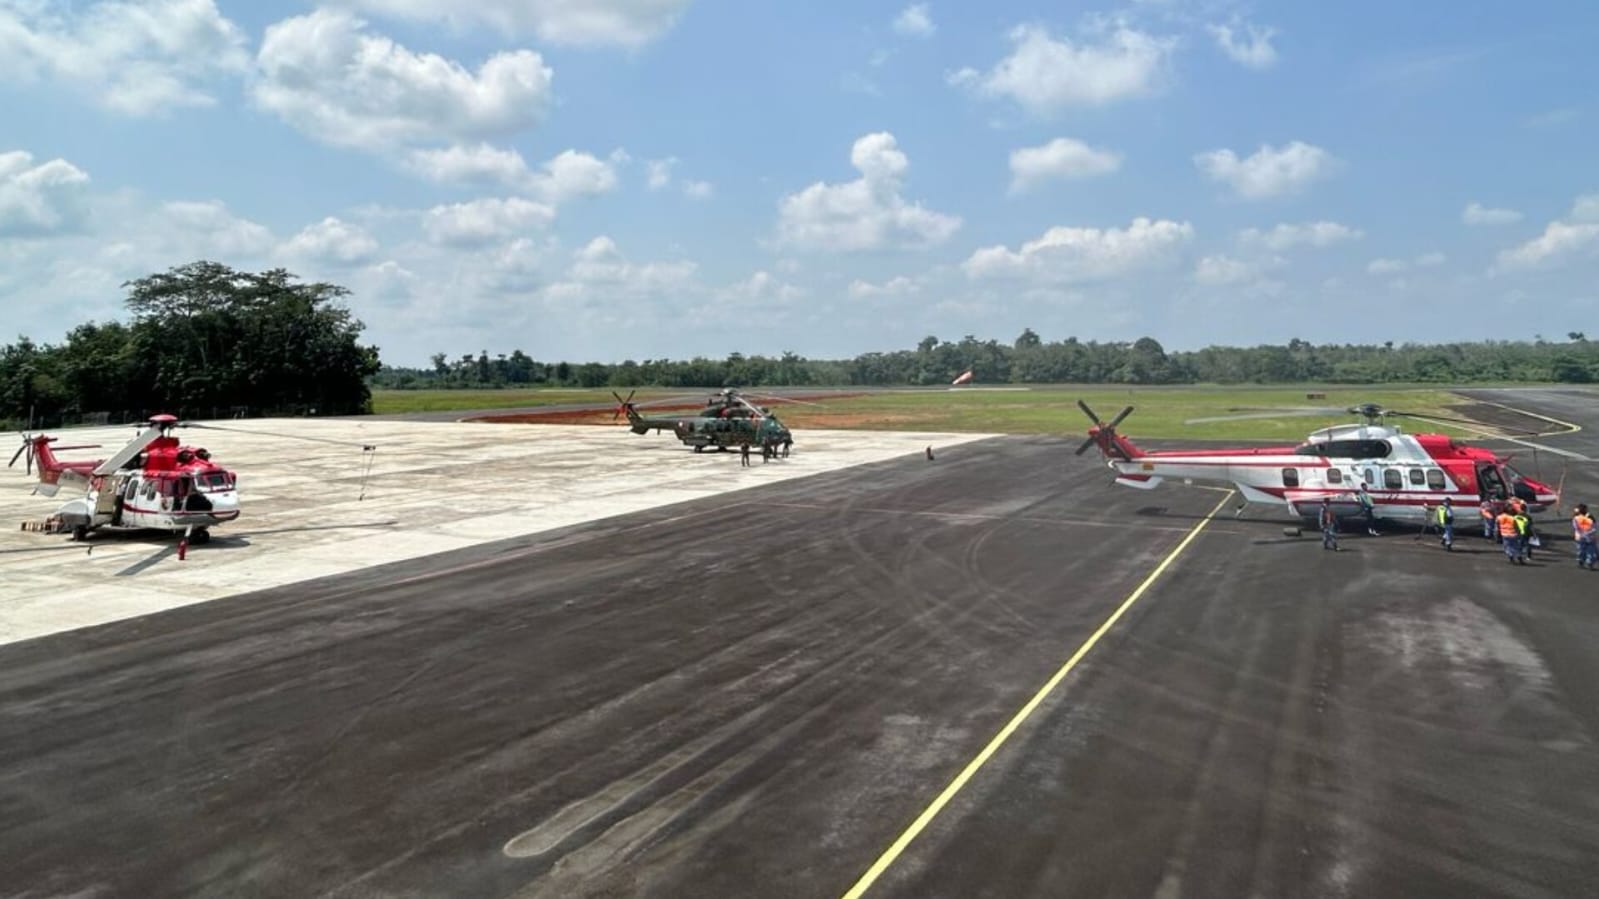 Presiden Jokowi Datang ke Lubuk Linggau, 3 Helikopter Standby di Bandara Silampari, Ini Jadwal Kedatangannya